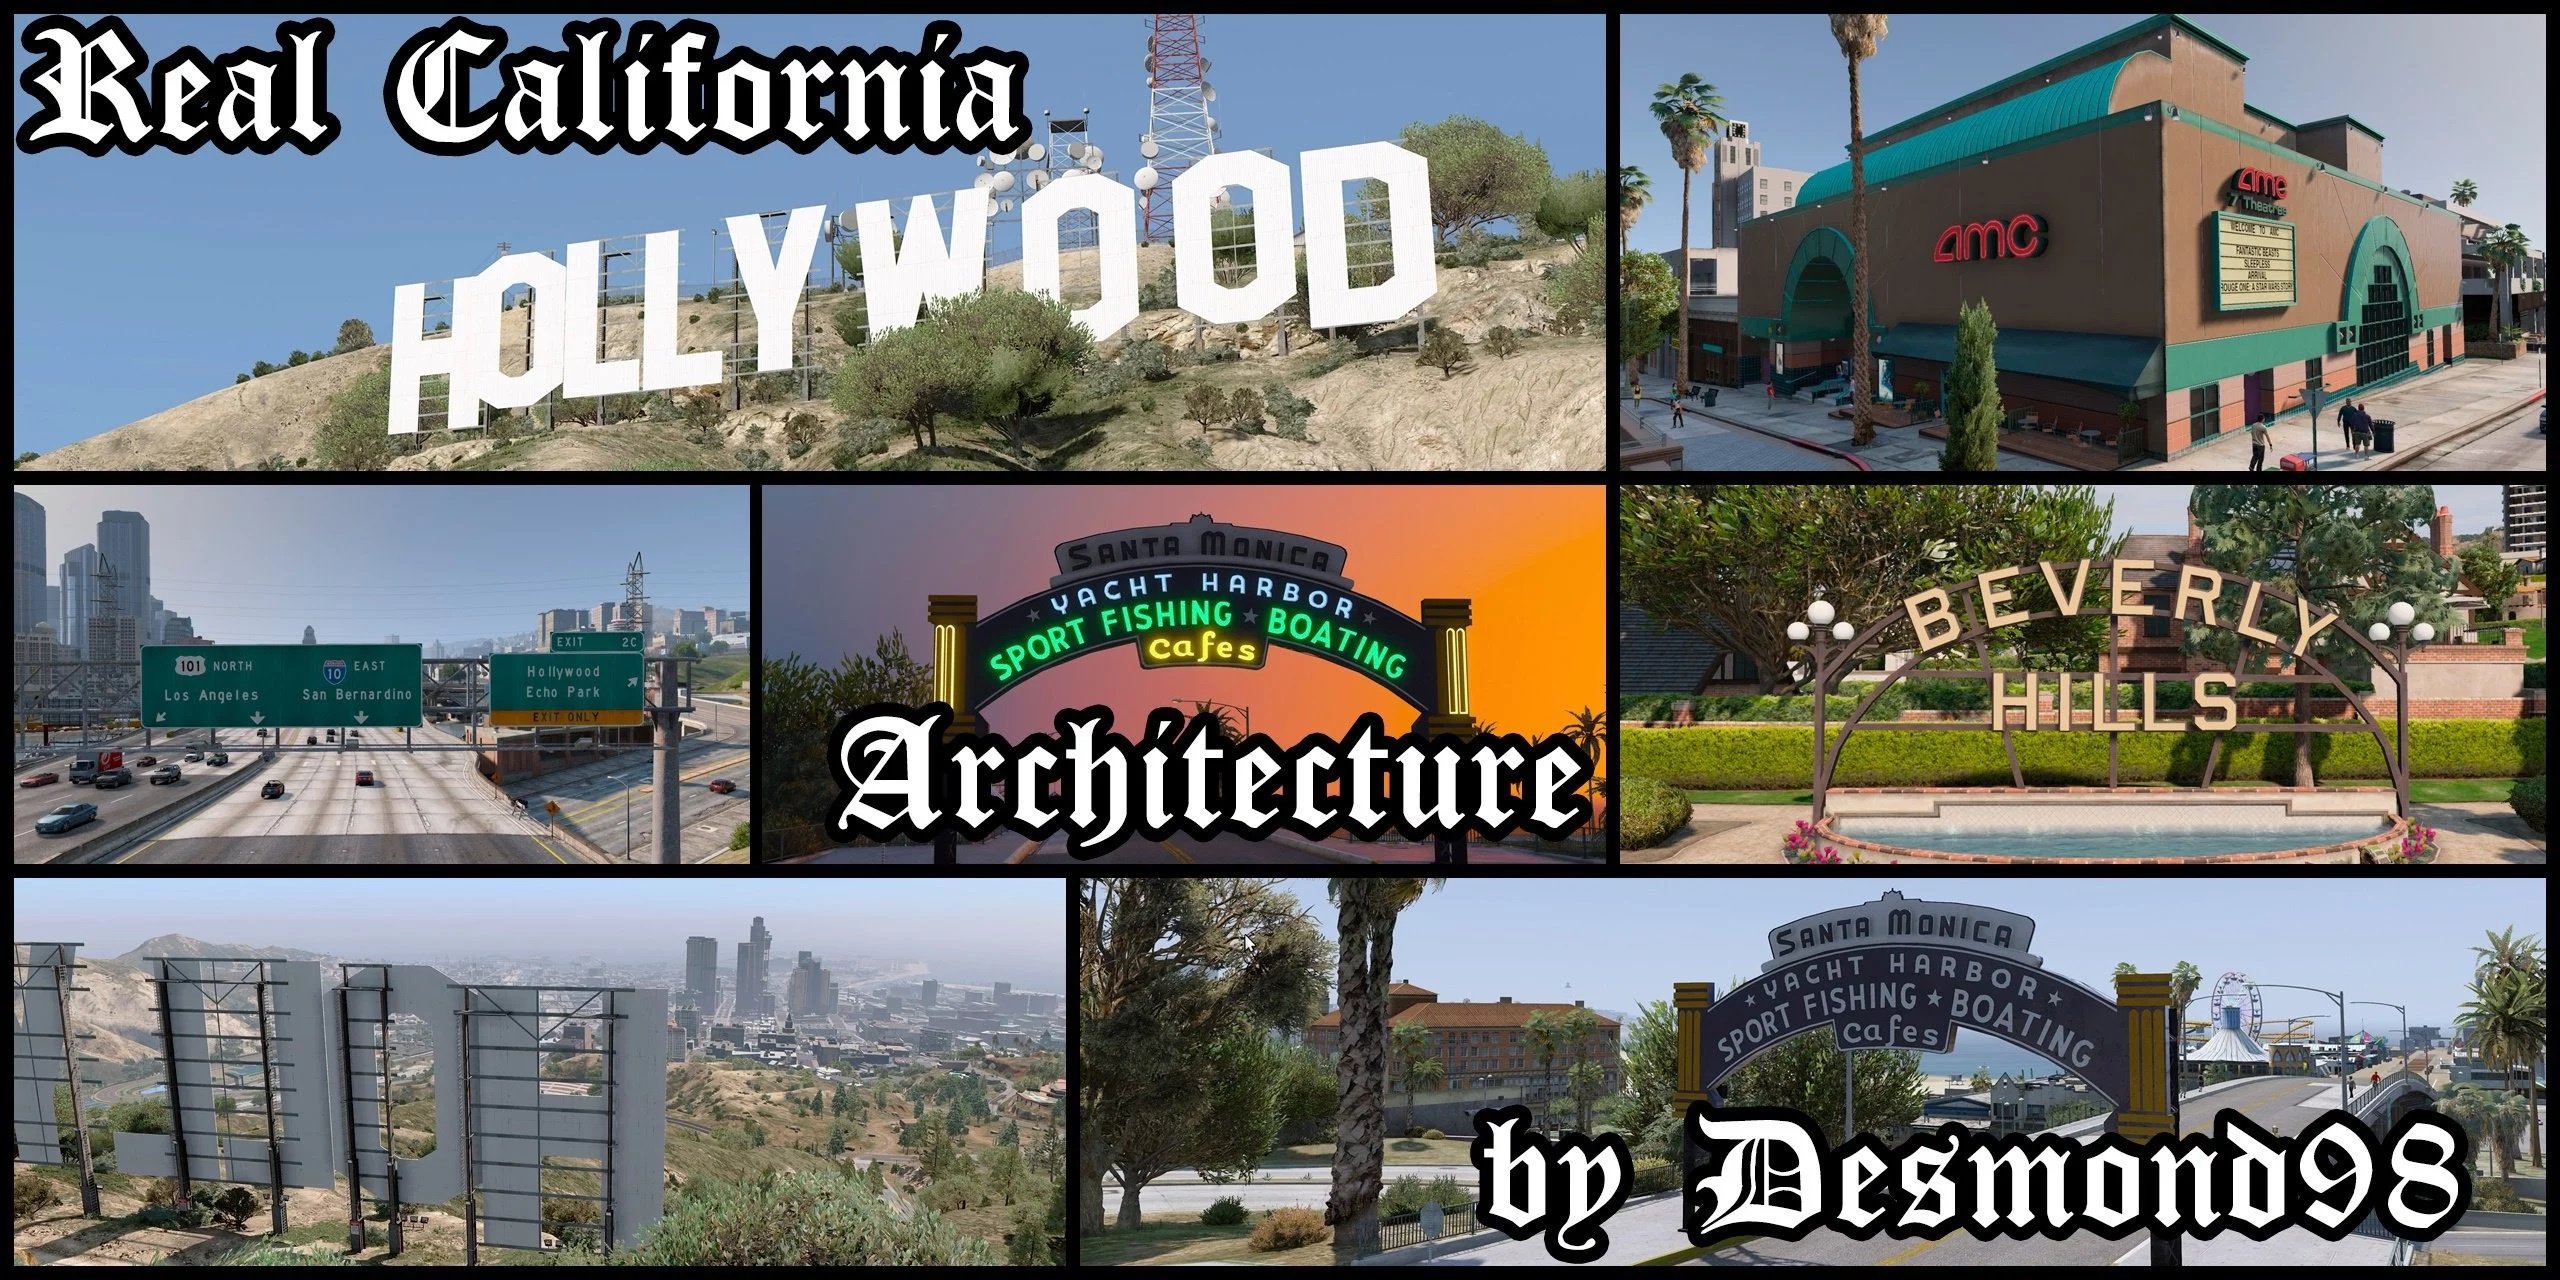 GTA 5 LOS SANTOS PLACES VS REAL LIFE LOS ANGELES PLACES (VERY